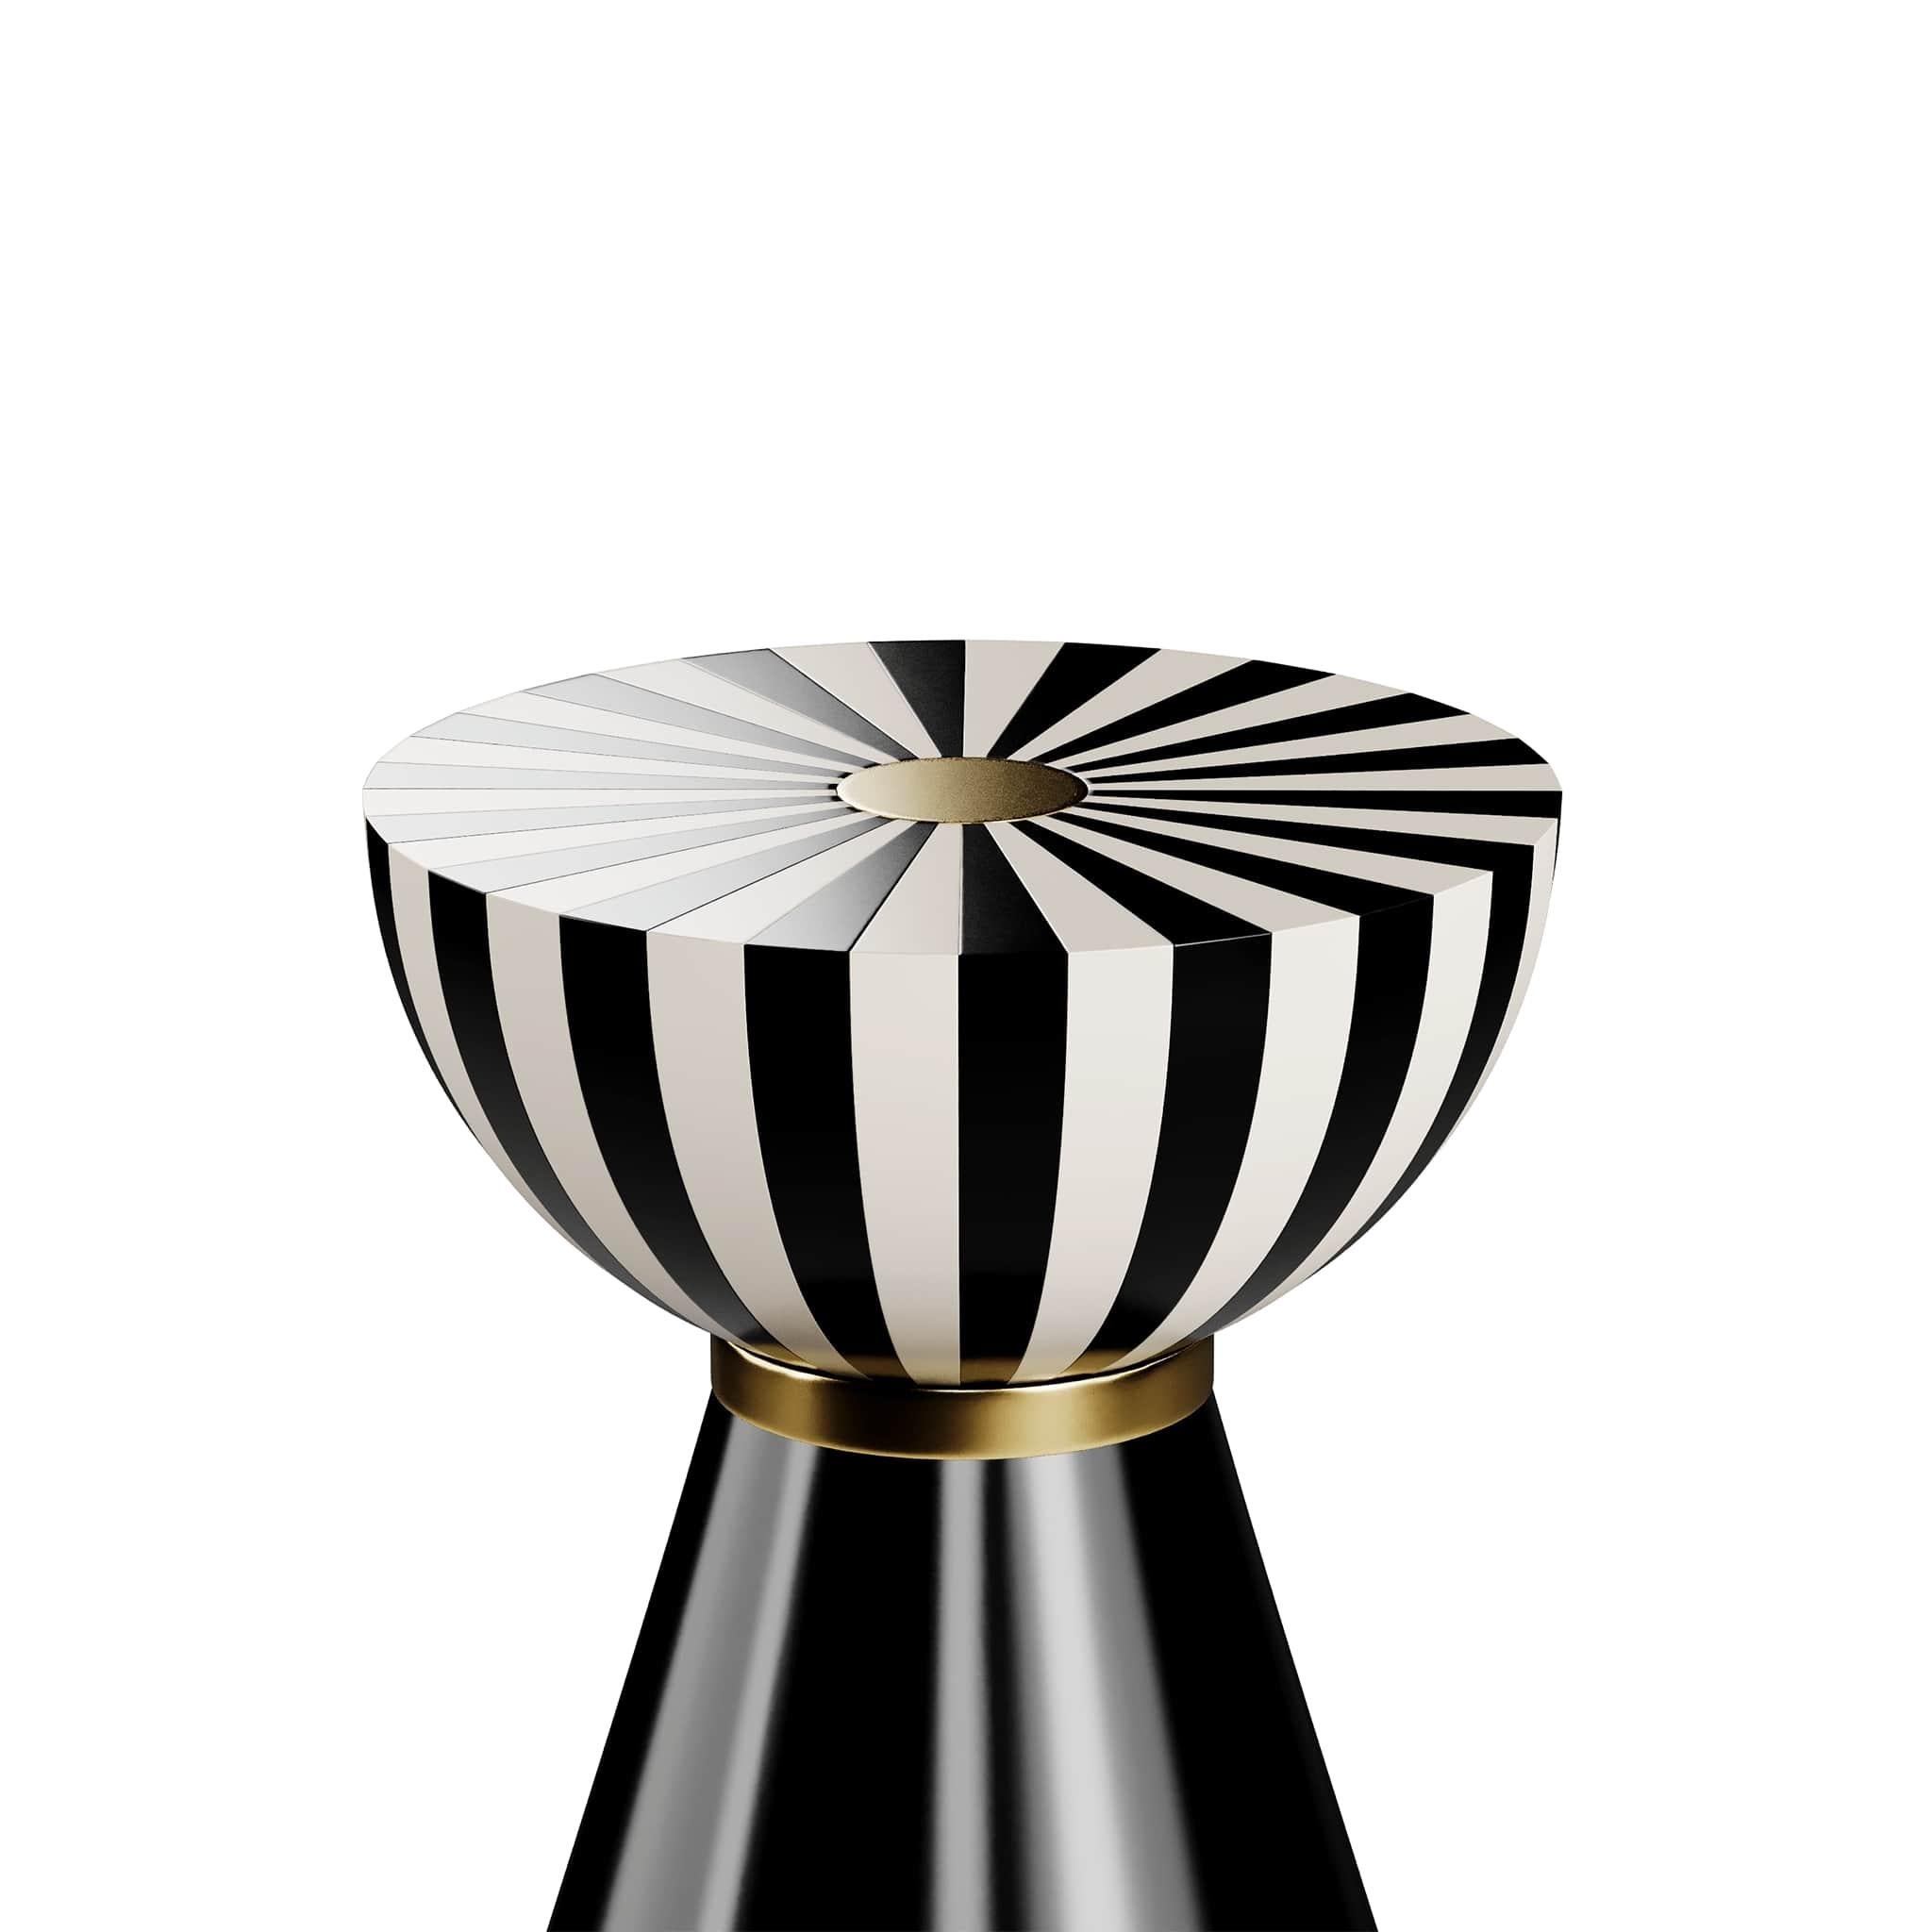 Table d'appoint ronde moderne à plateau noir et blanc, détails en acier inoxydable doré

La table d'appoint Fuschia II est la table de cocktail idéale pour les salons à l'élégance fantaisiste. Avec ses couches de formes courageuses et de textures